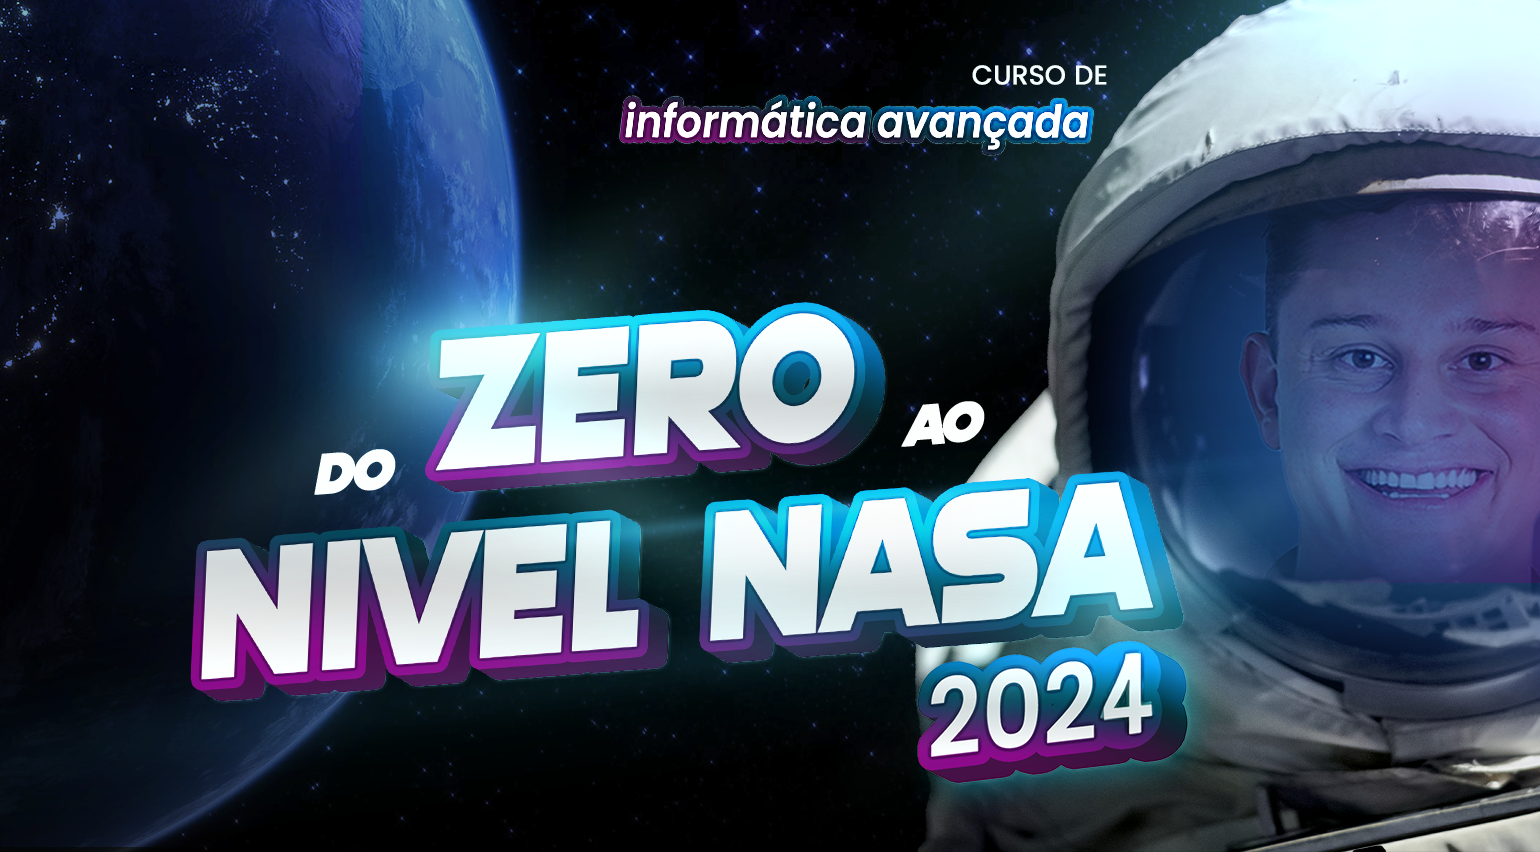 Do Zero ao nível NASA